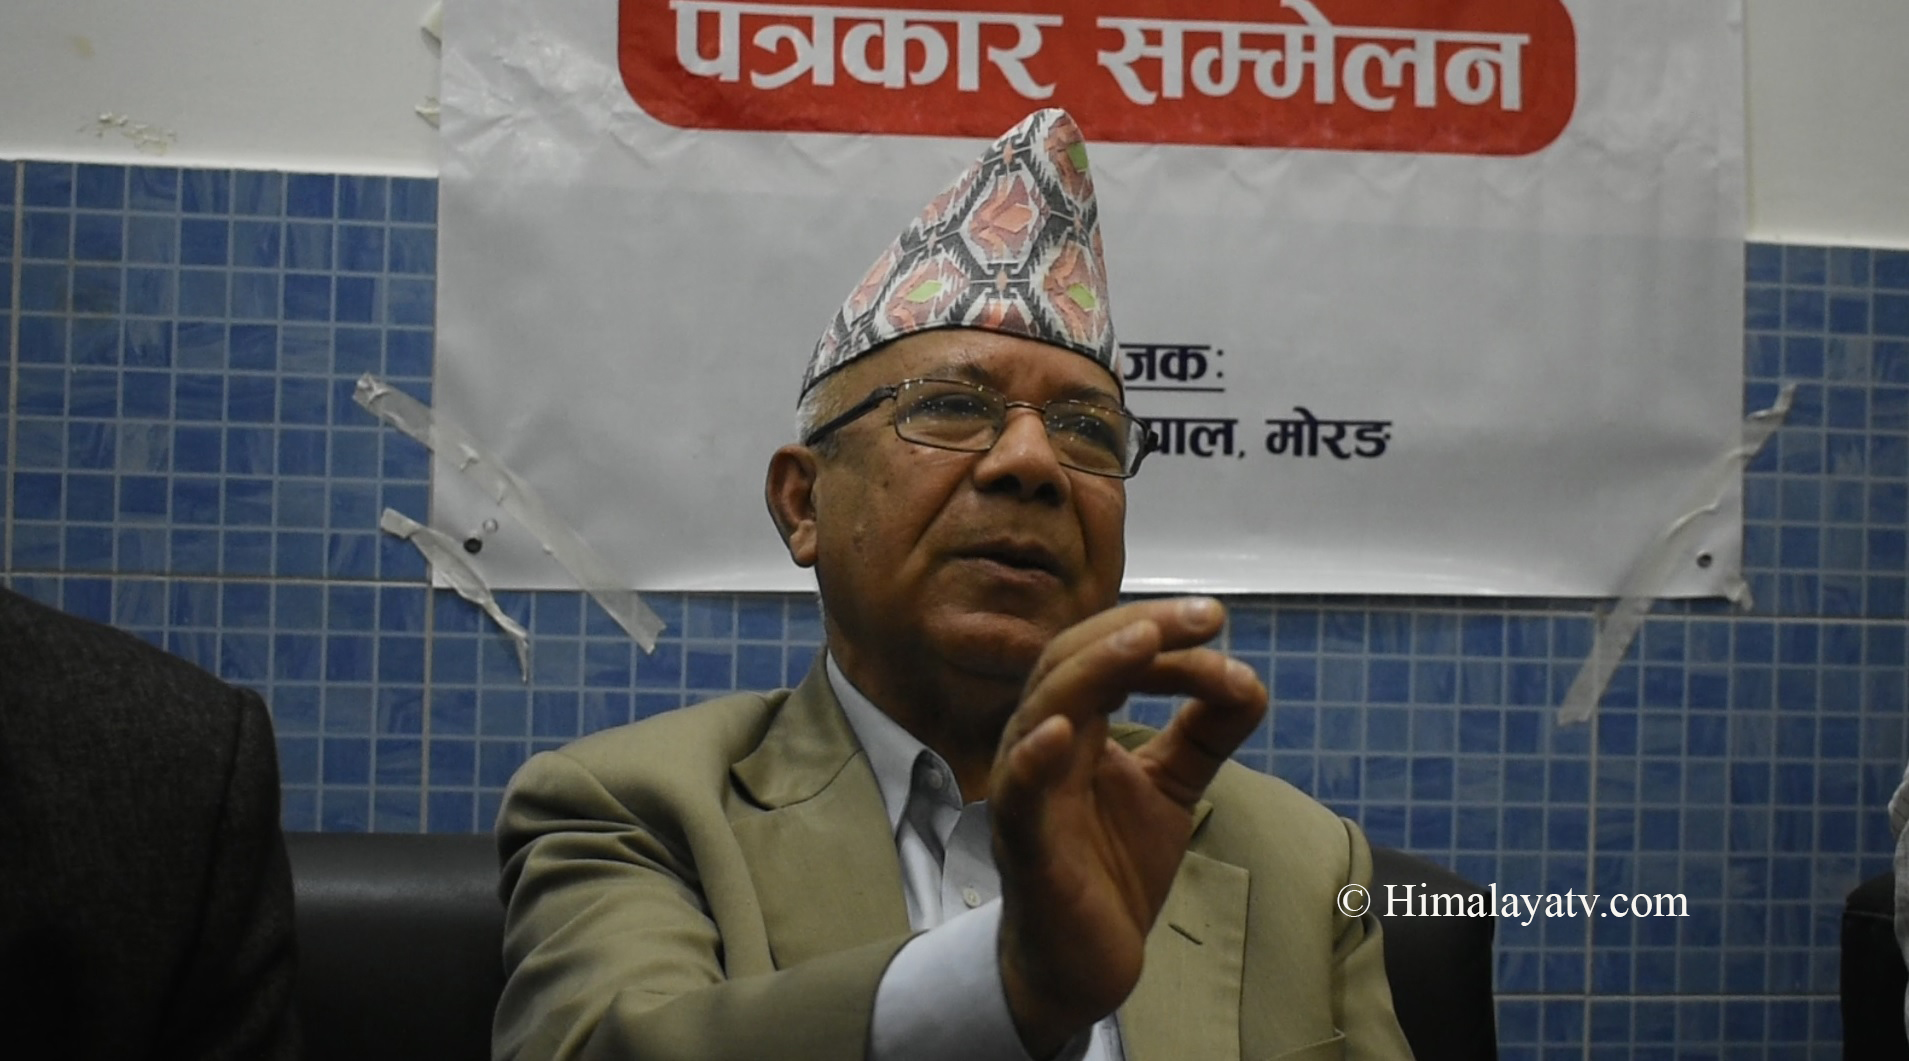 प्रतिगमनको विपक्षमा रहेका शक्तिको सहकार्यमा नयाँ सरकार बन्छः अध्यक्ष नेपाल (भिडियो रिपोर्टसहित)